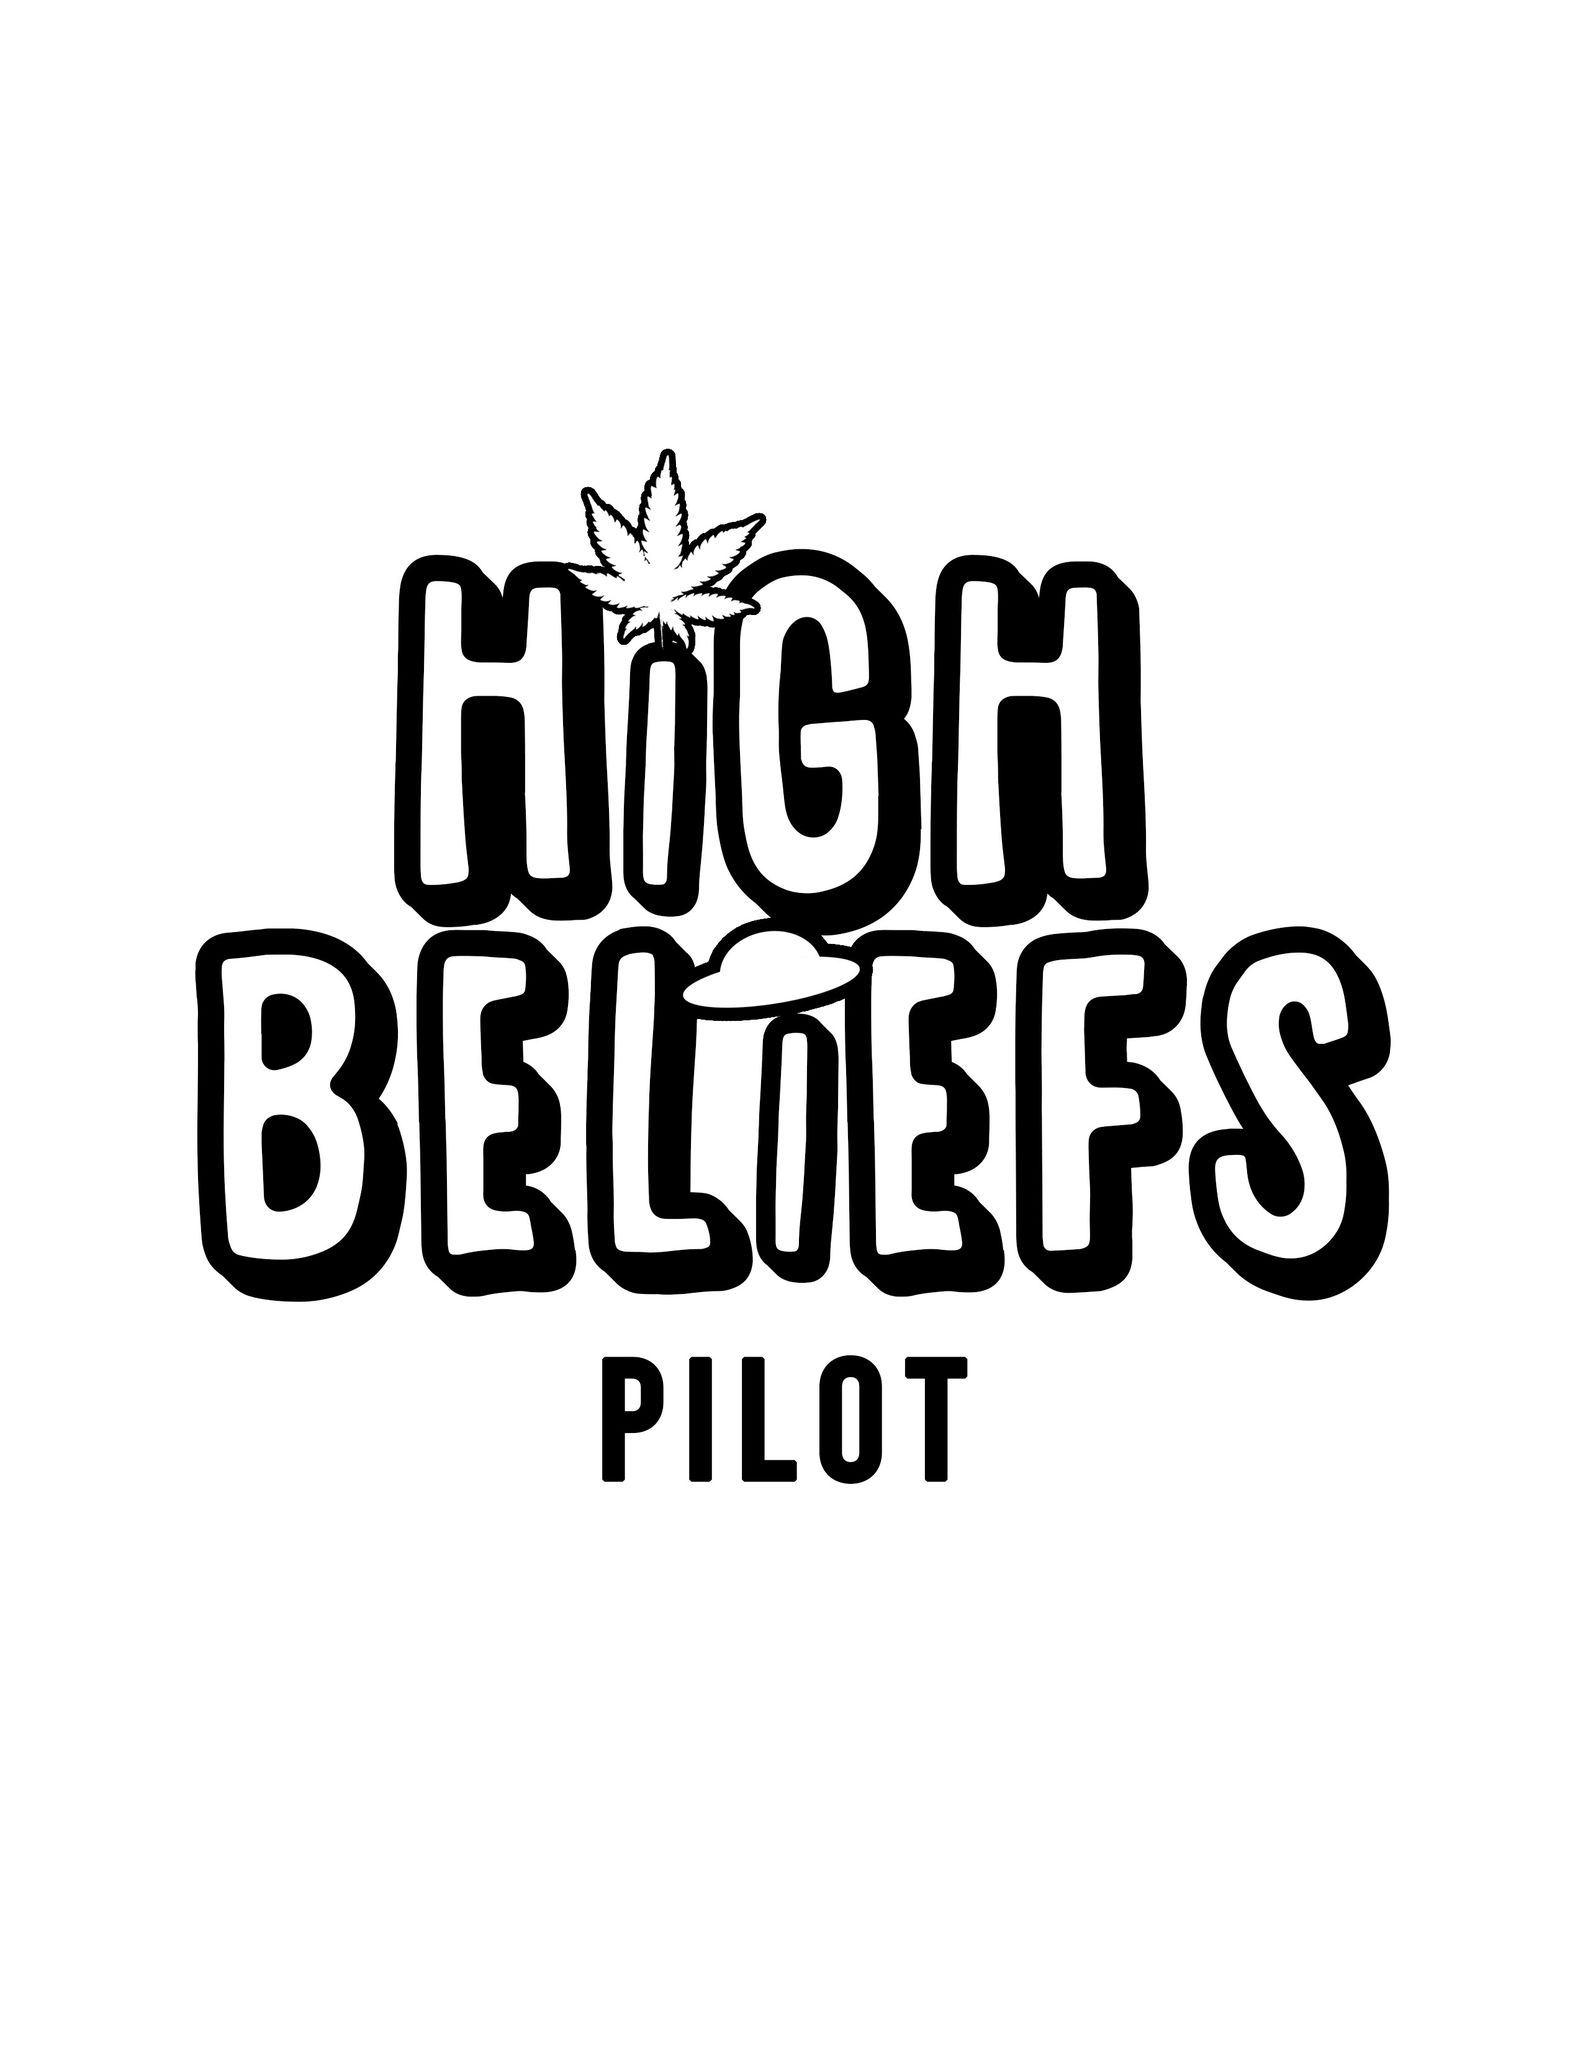 HIGH BELIEFS PILOT